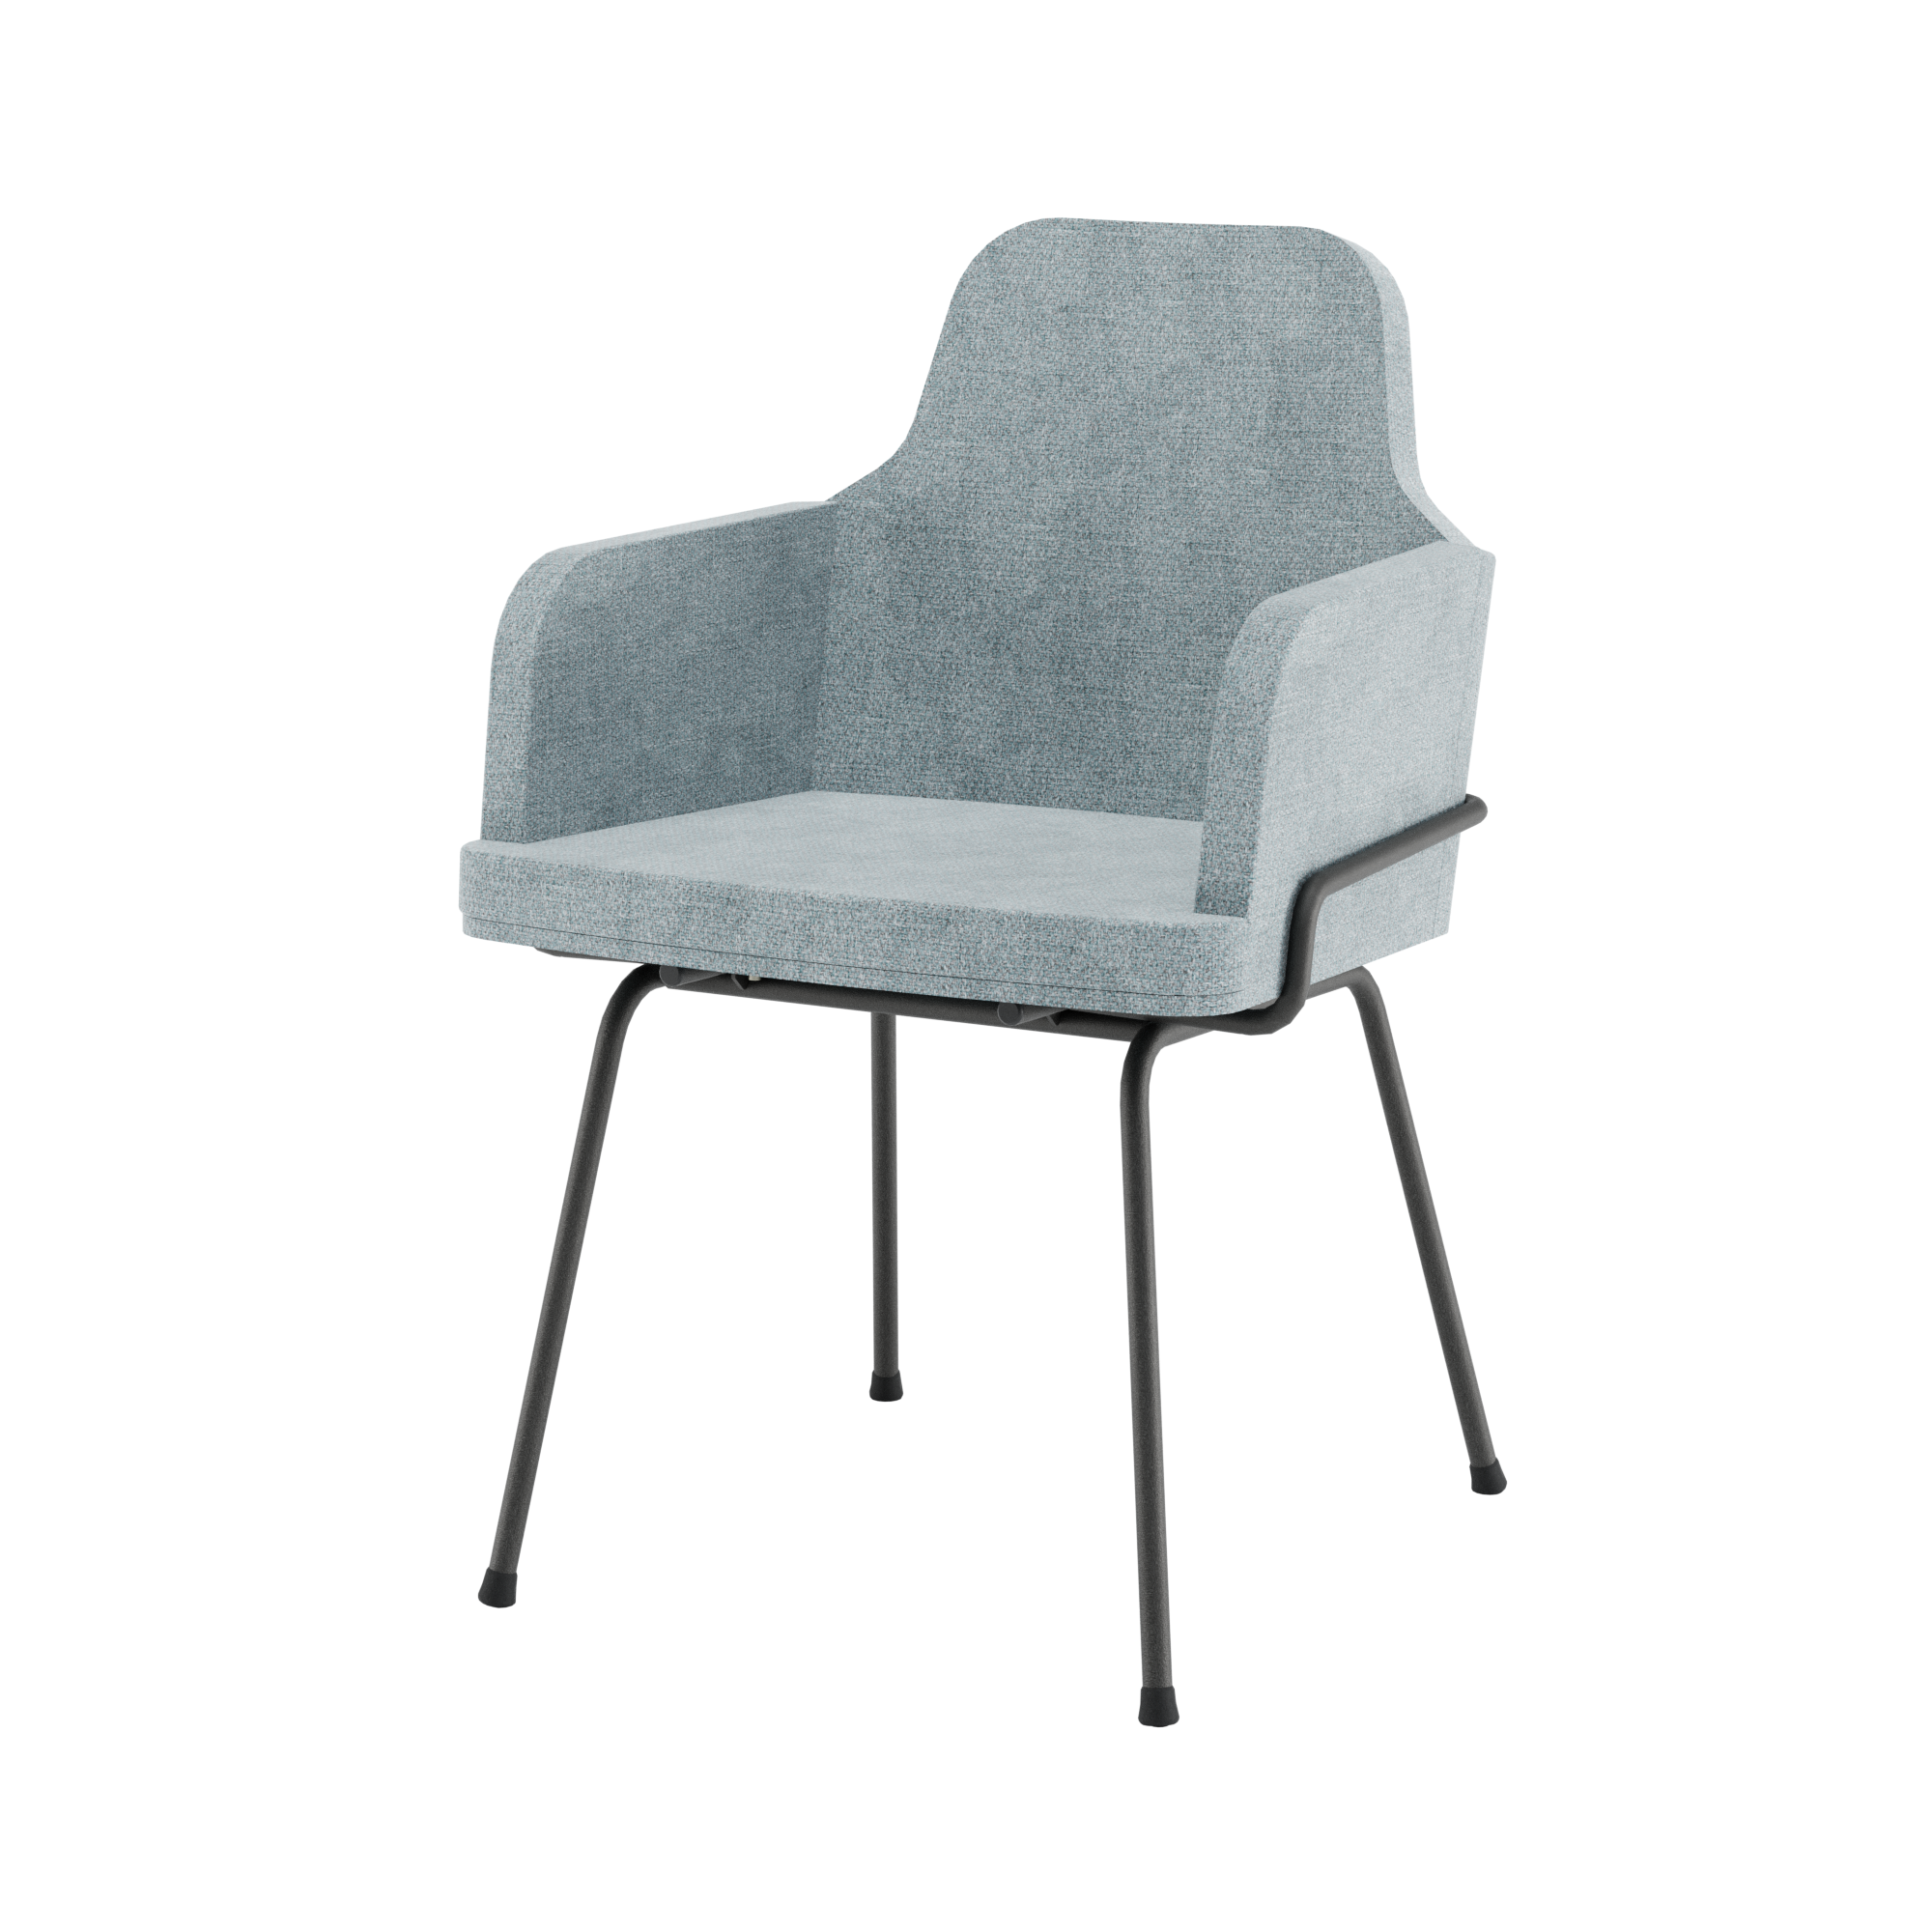 In het ‘Ode to Nature’ kleurenpalet is turkoois/aquablauw een gloednieuwe trendkleur. Design in Box vertaalt dit met de Hybrid chair in ‘Orion Azure’ naar duurzaam design in een tijdloos jasje.